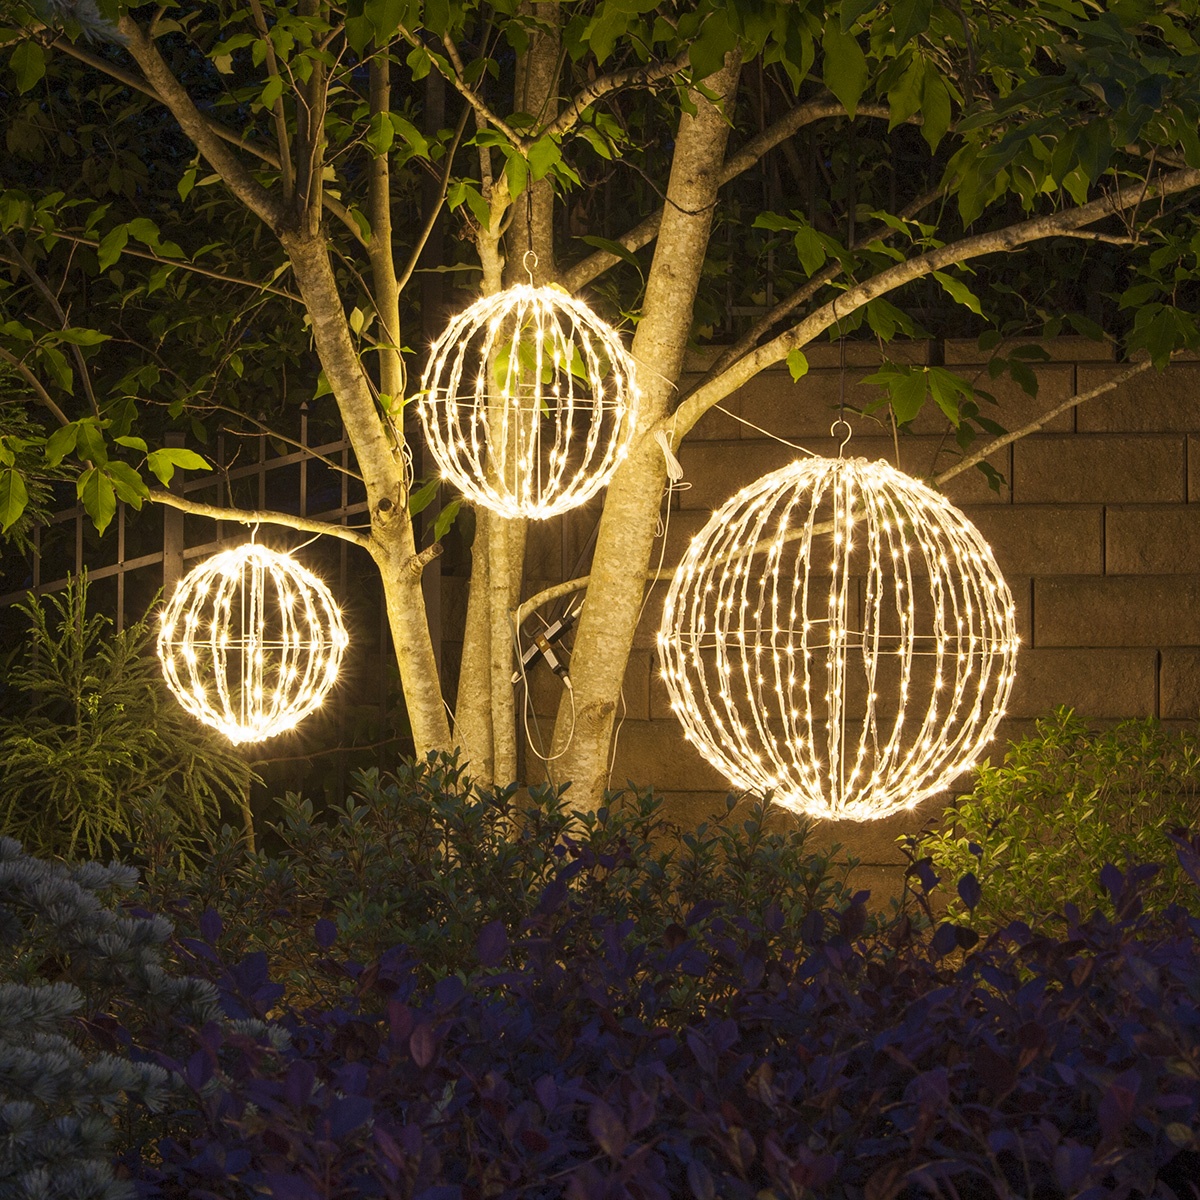 Large Outdoor Christmas Ball Lights